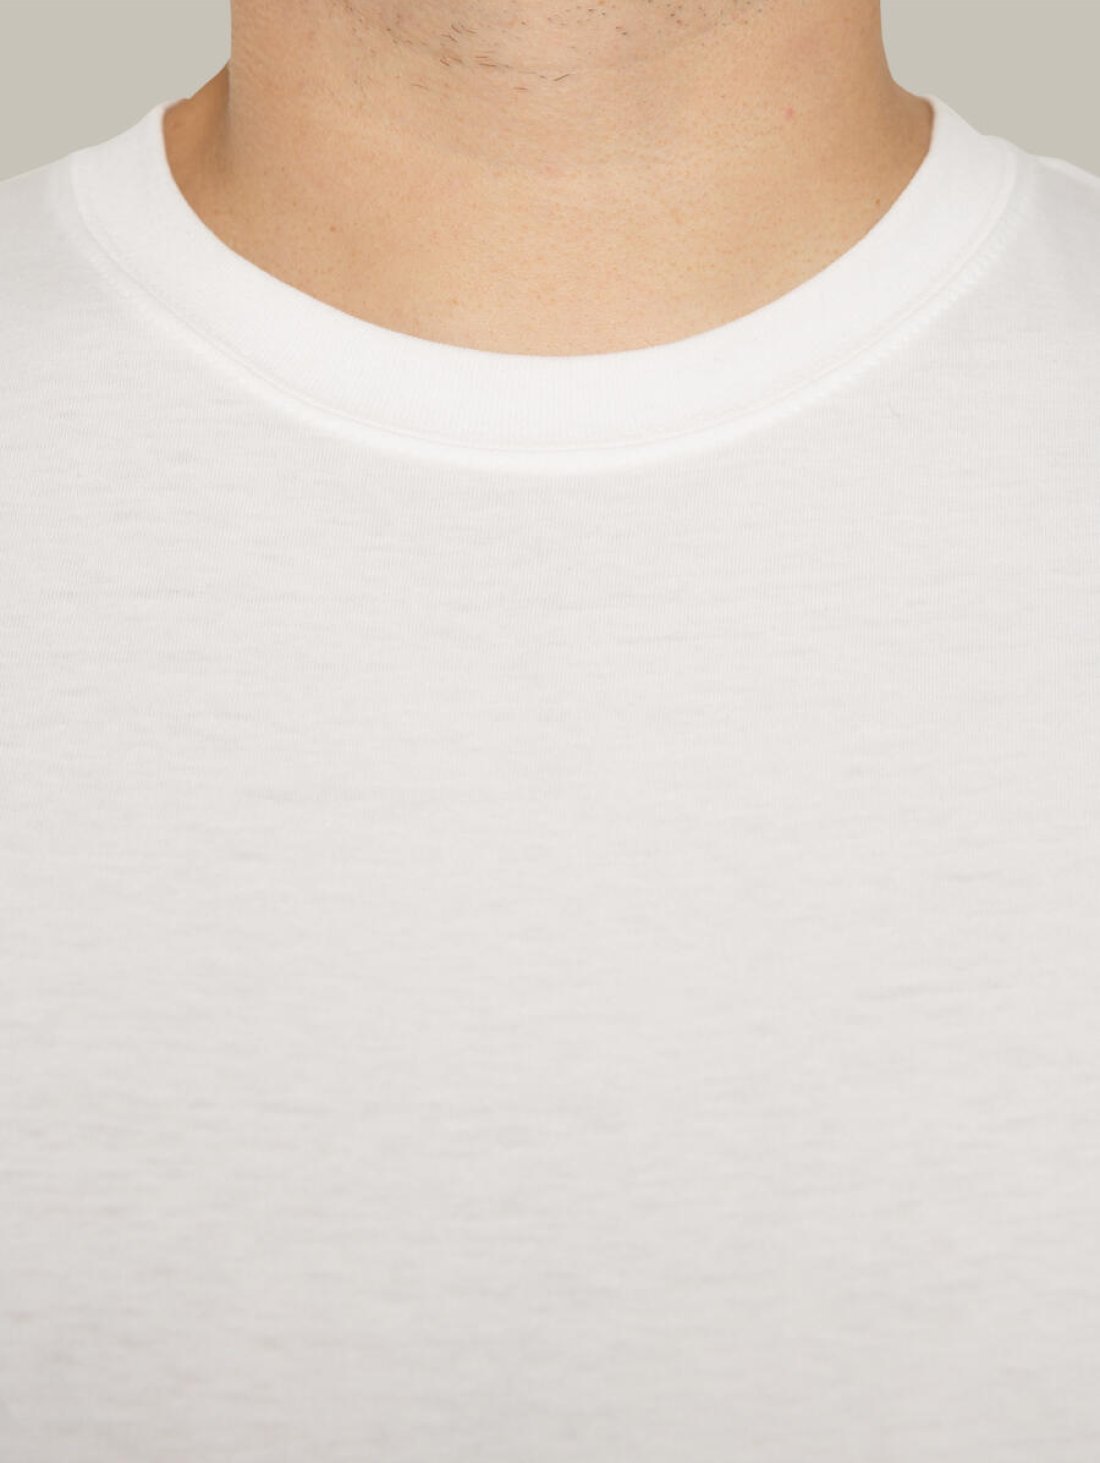 Чоловіча футболка, біла з принтом аватара Hopper 014